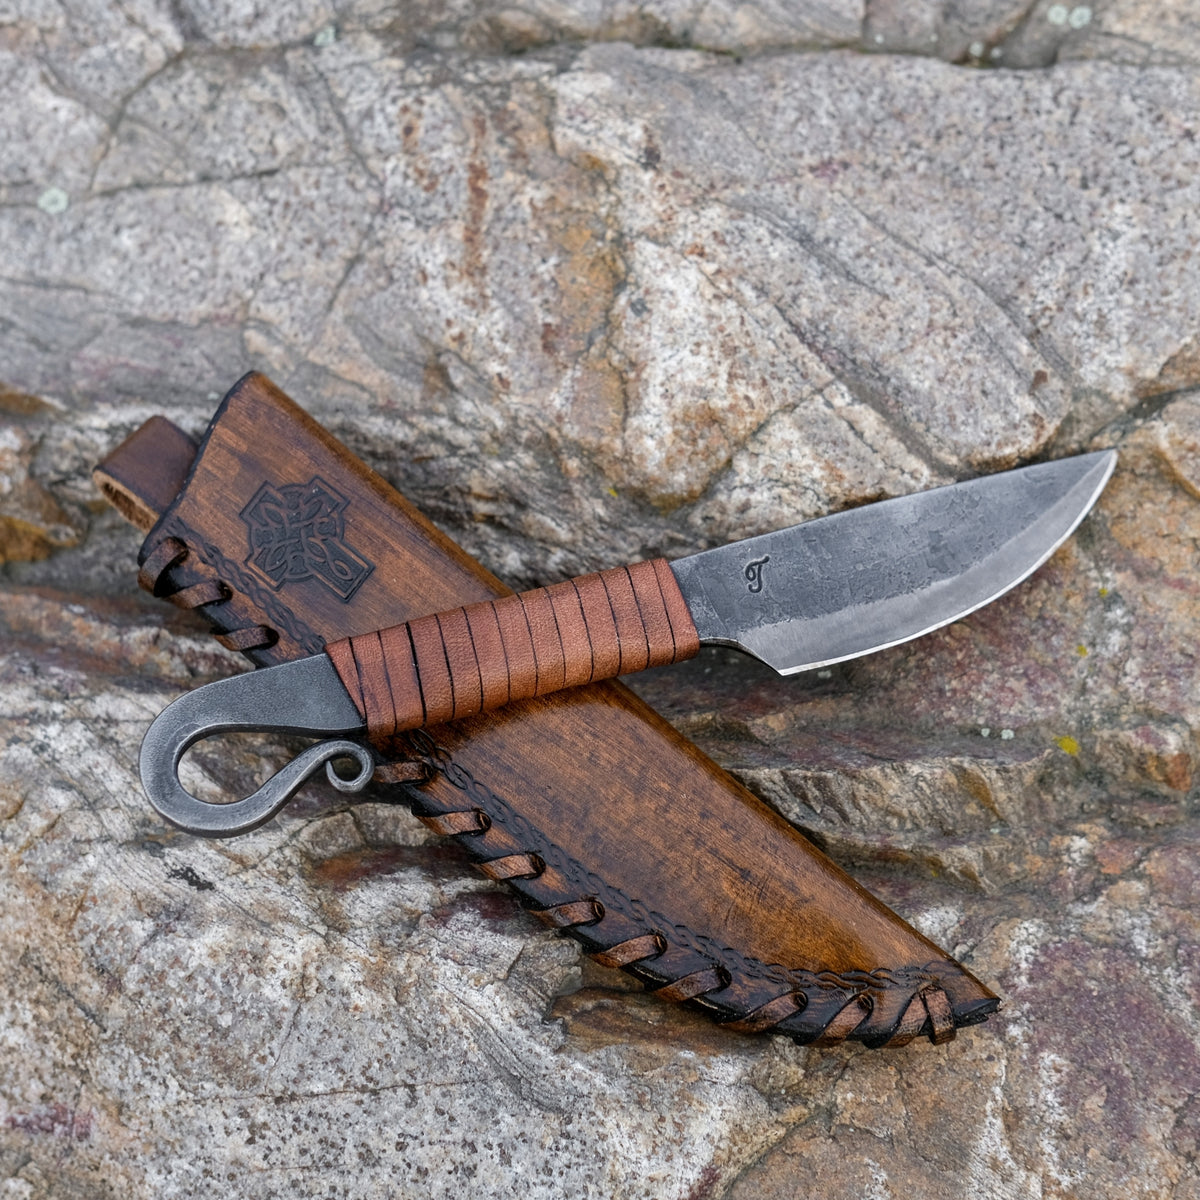 Toferner Medieval Celtic Knife (brown) - Hand forged Knives